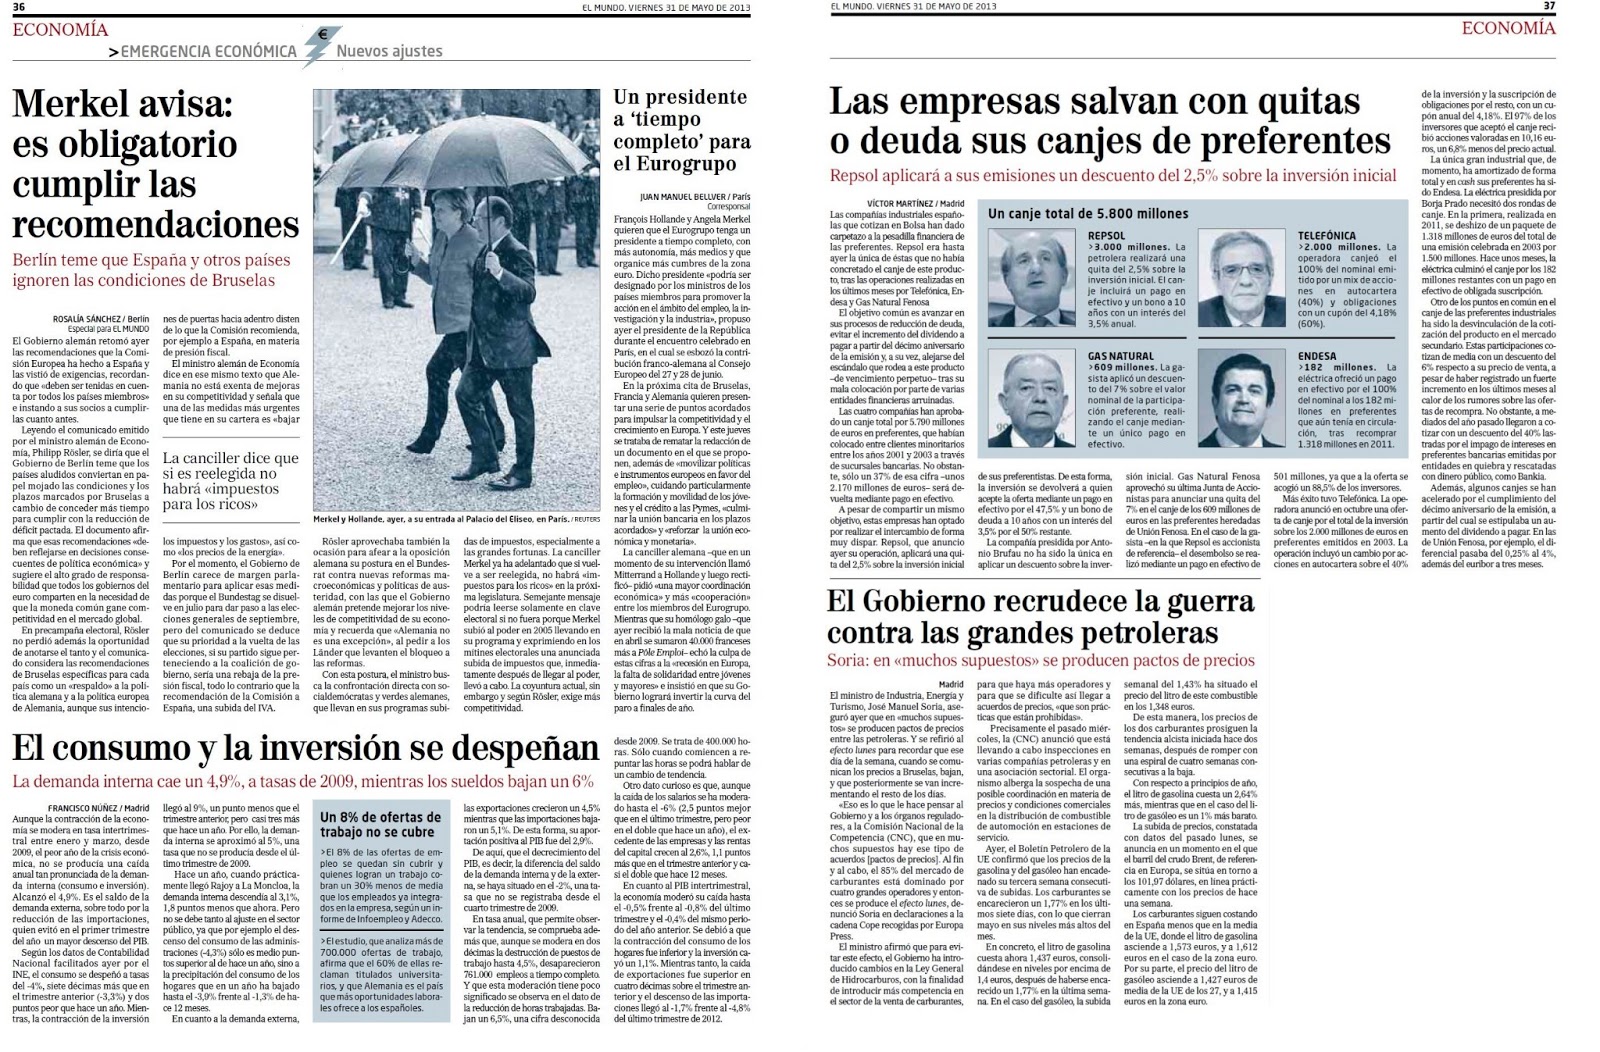 Gracias al PP, Baleares rompe las cadenas de la opresión imperialista catalana